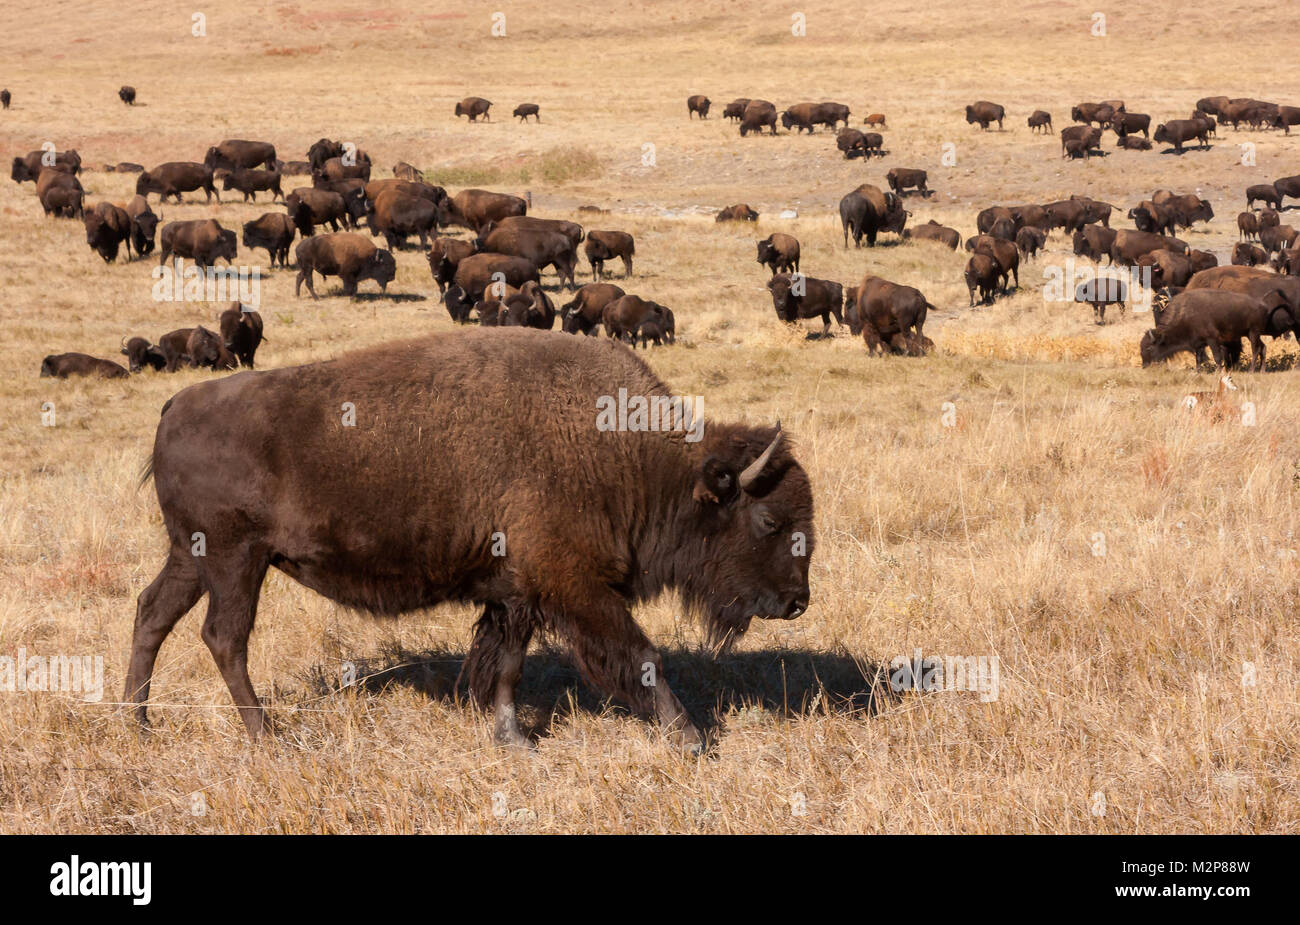 Cazados cerca de la extinción en los años 1800's la American Buffalo (Bison bison) se ha recuperado hasta el punto de que las grandes manadas pueden verse nuevamente. Foto de stock